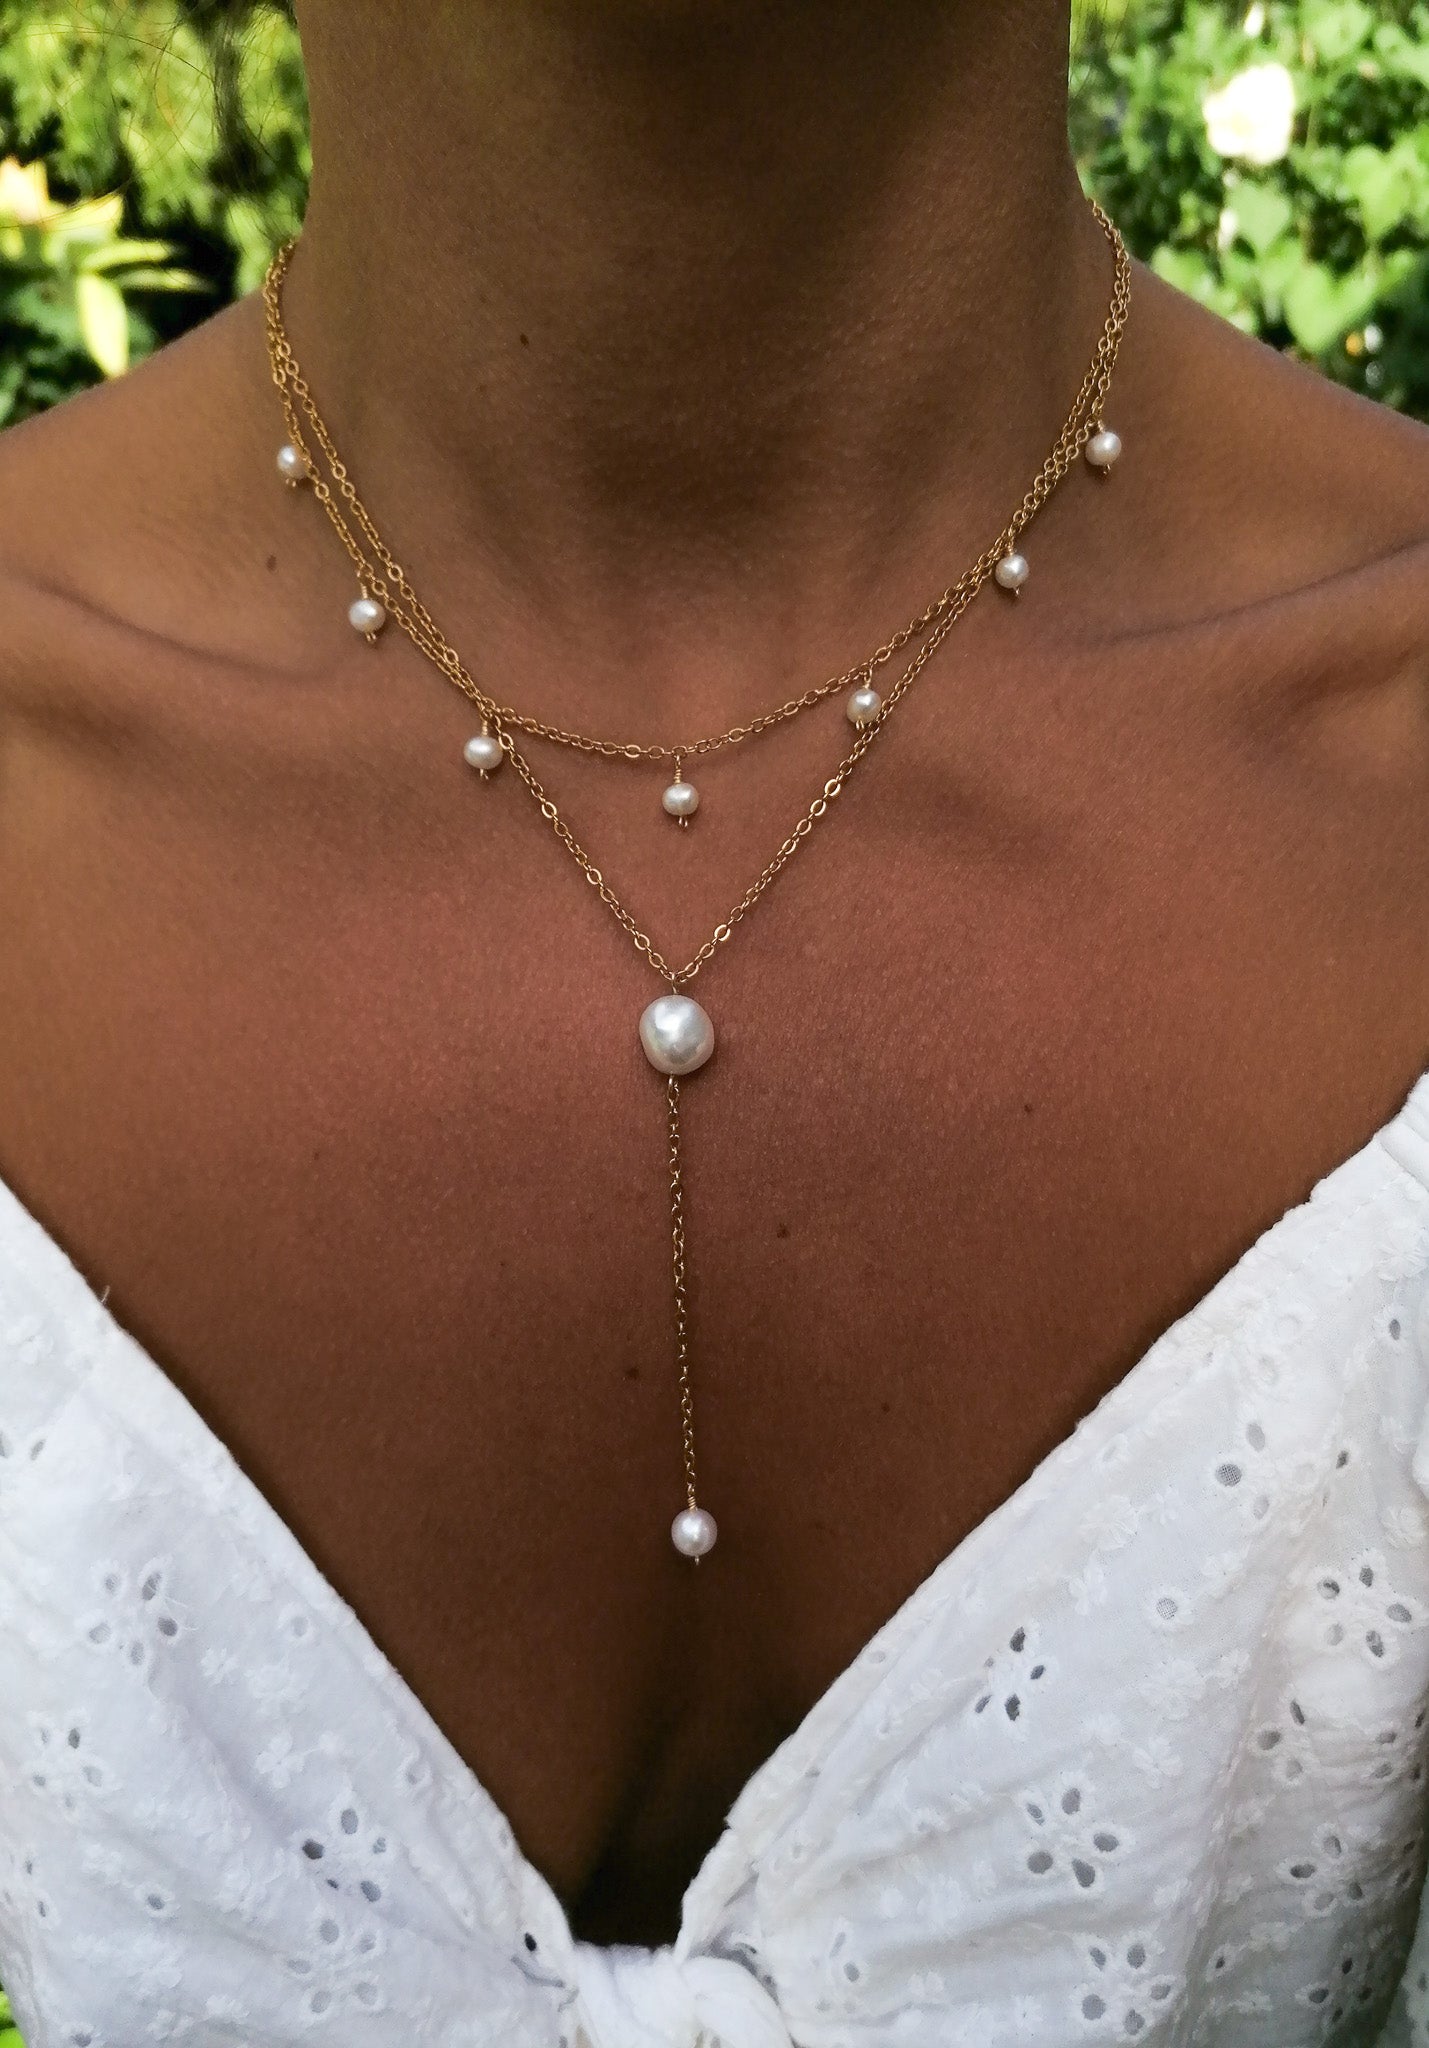 Renaissance necklace